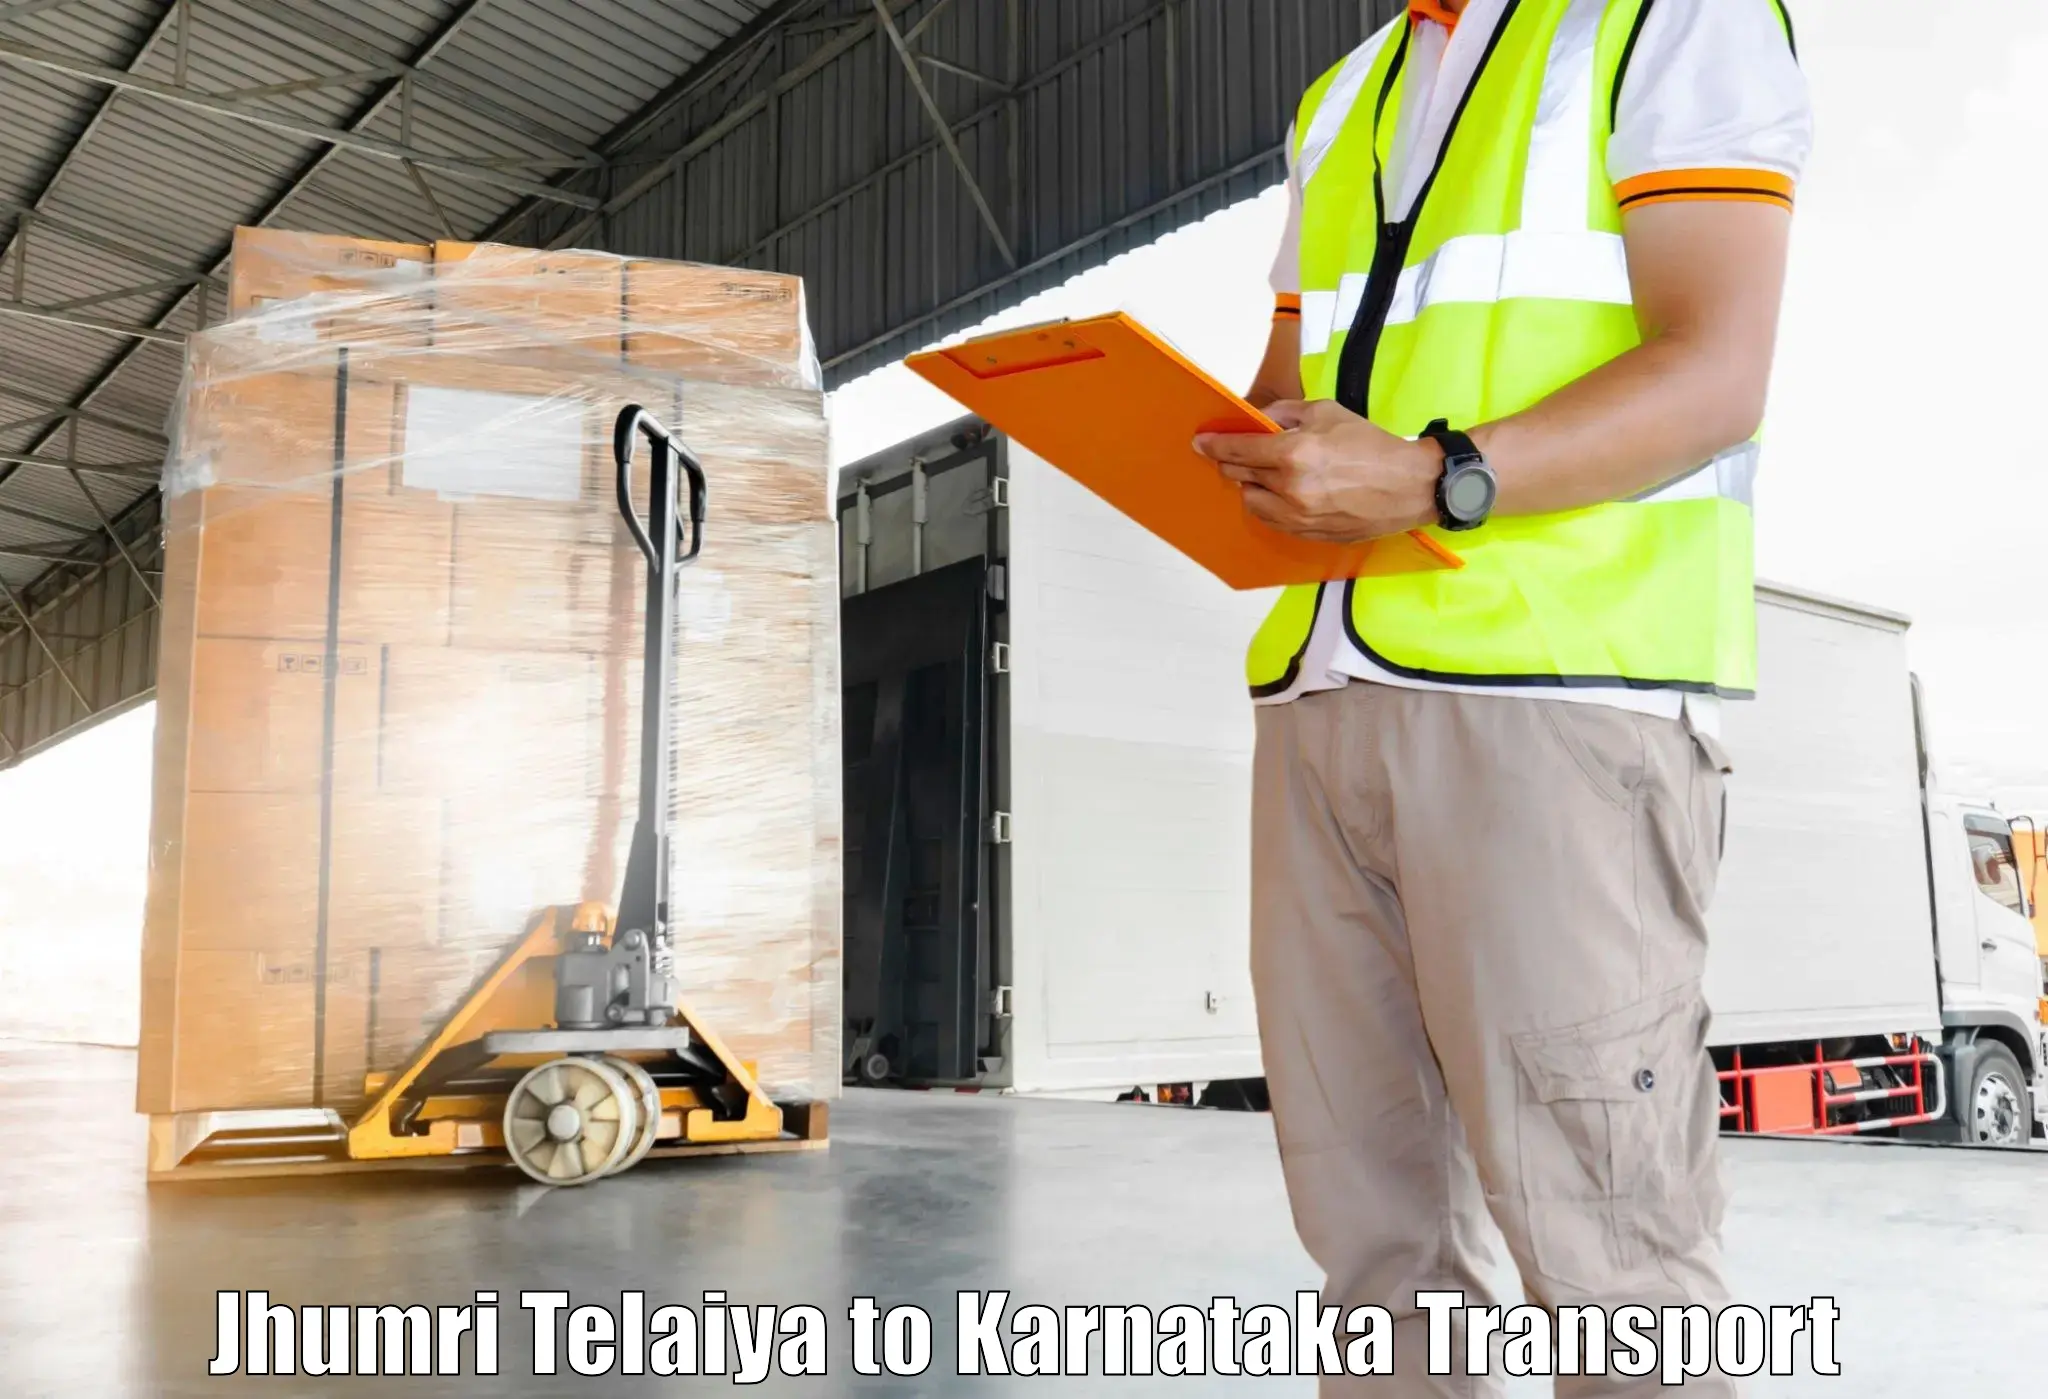 Domestic goods transportation services Jhumri Telaiya to Yellare